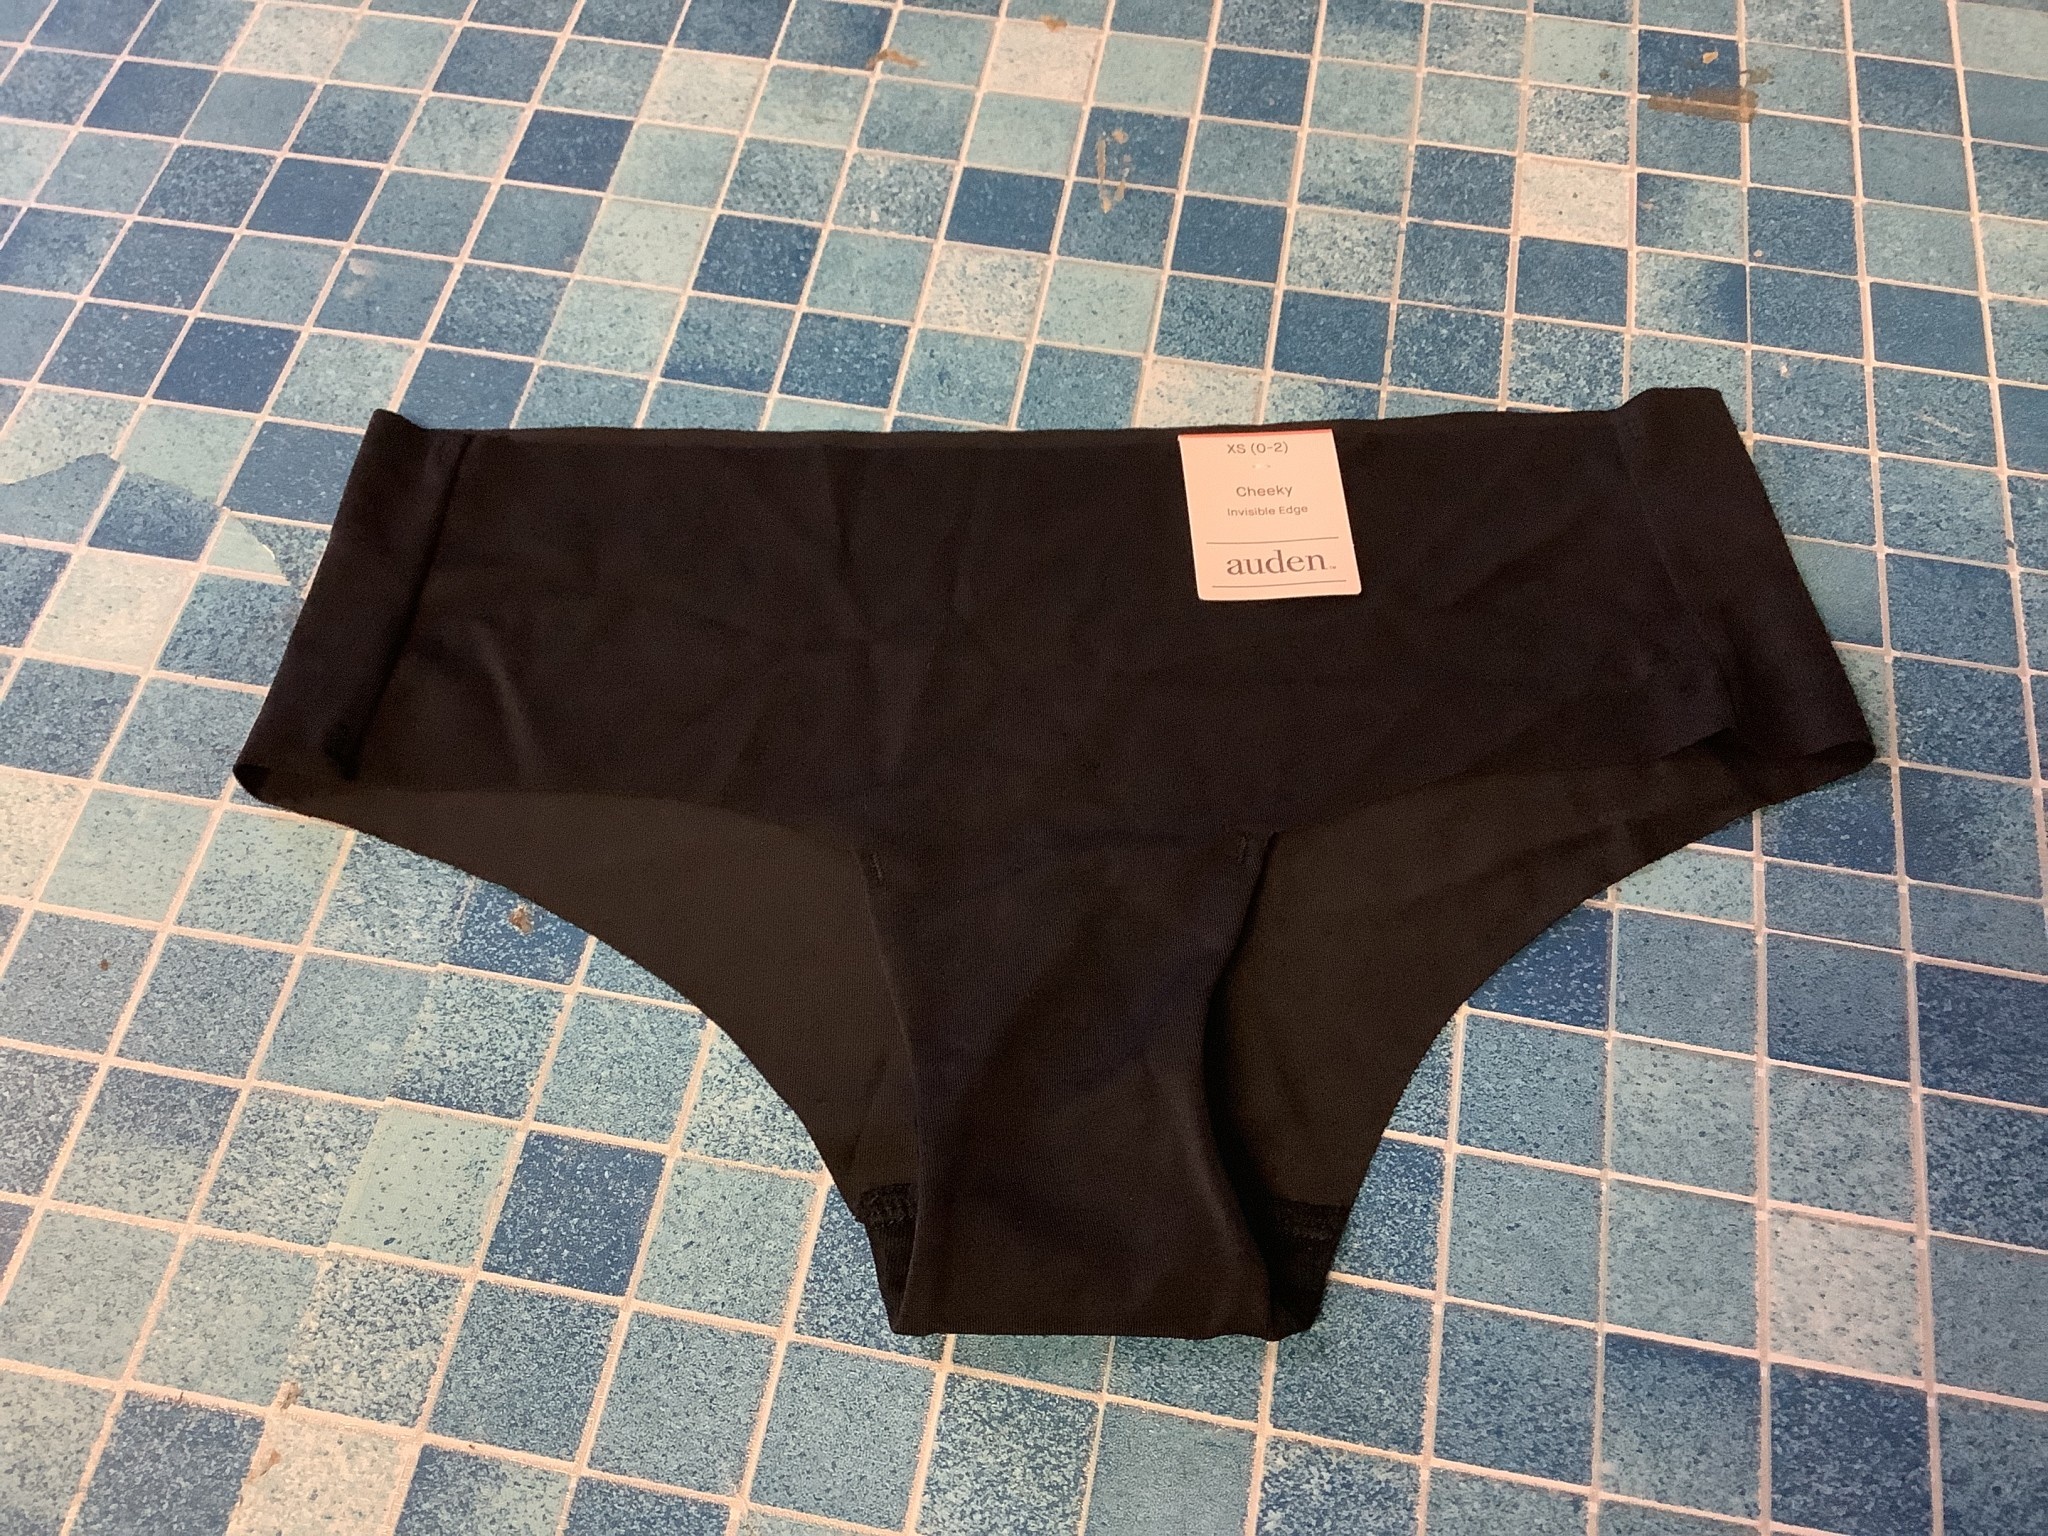 Auden XS Invisible Edge Cheeky Underwear